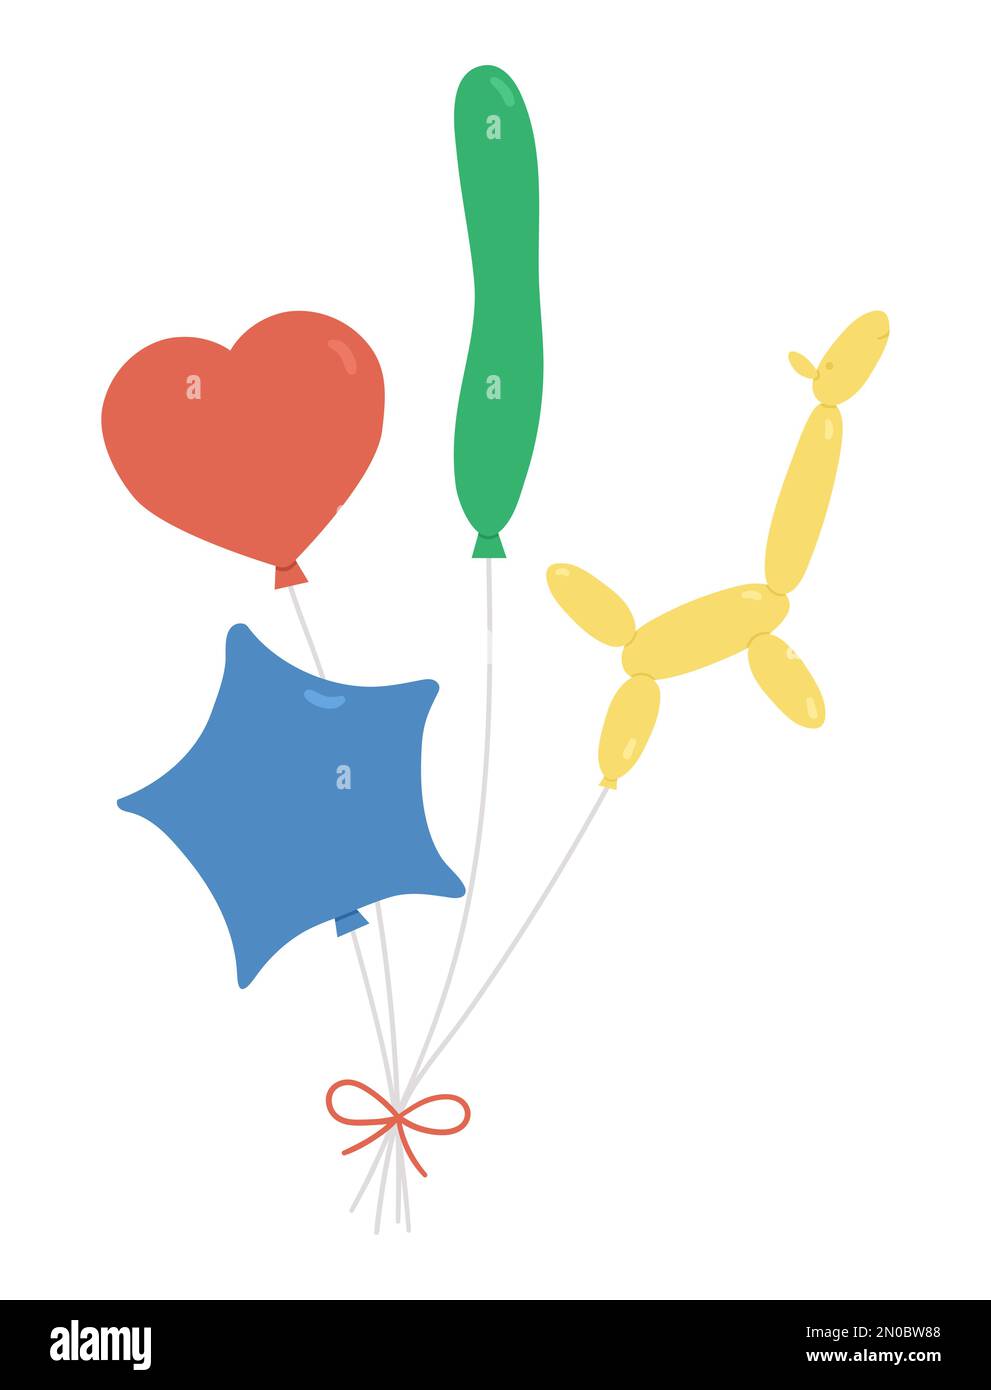 Ein hübscher Haufen Luftballons in verschiedenen Formen mit Schleife. Lustiges Geburtstagsgeschenk für Karte, Poster, Print-Design. Ein tolles Weihnachtsfoto für ein Kind Stock Vektor